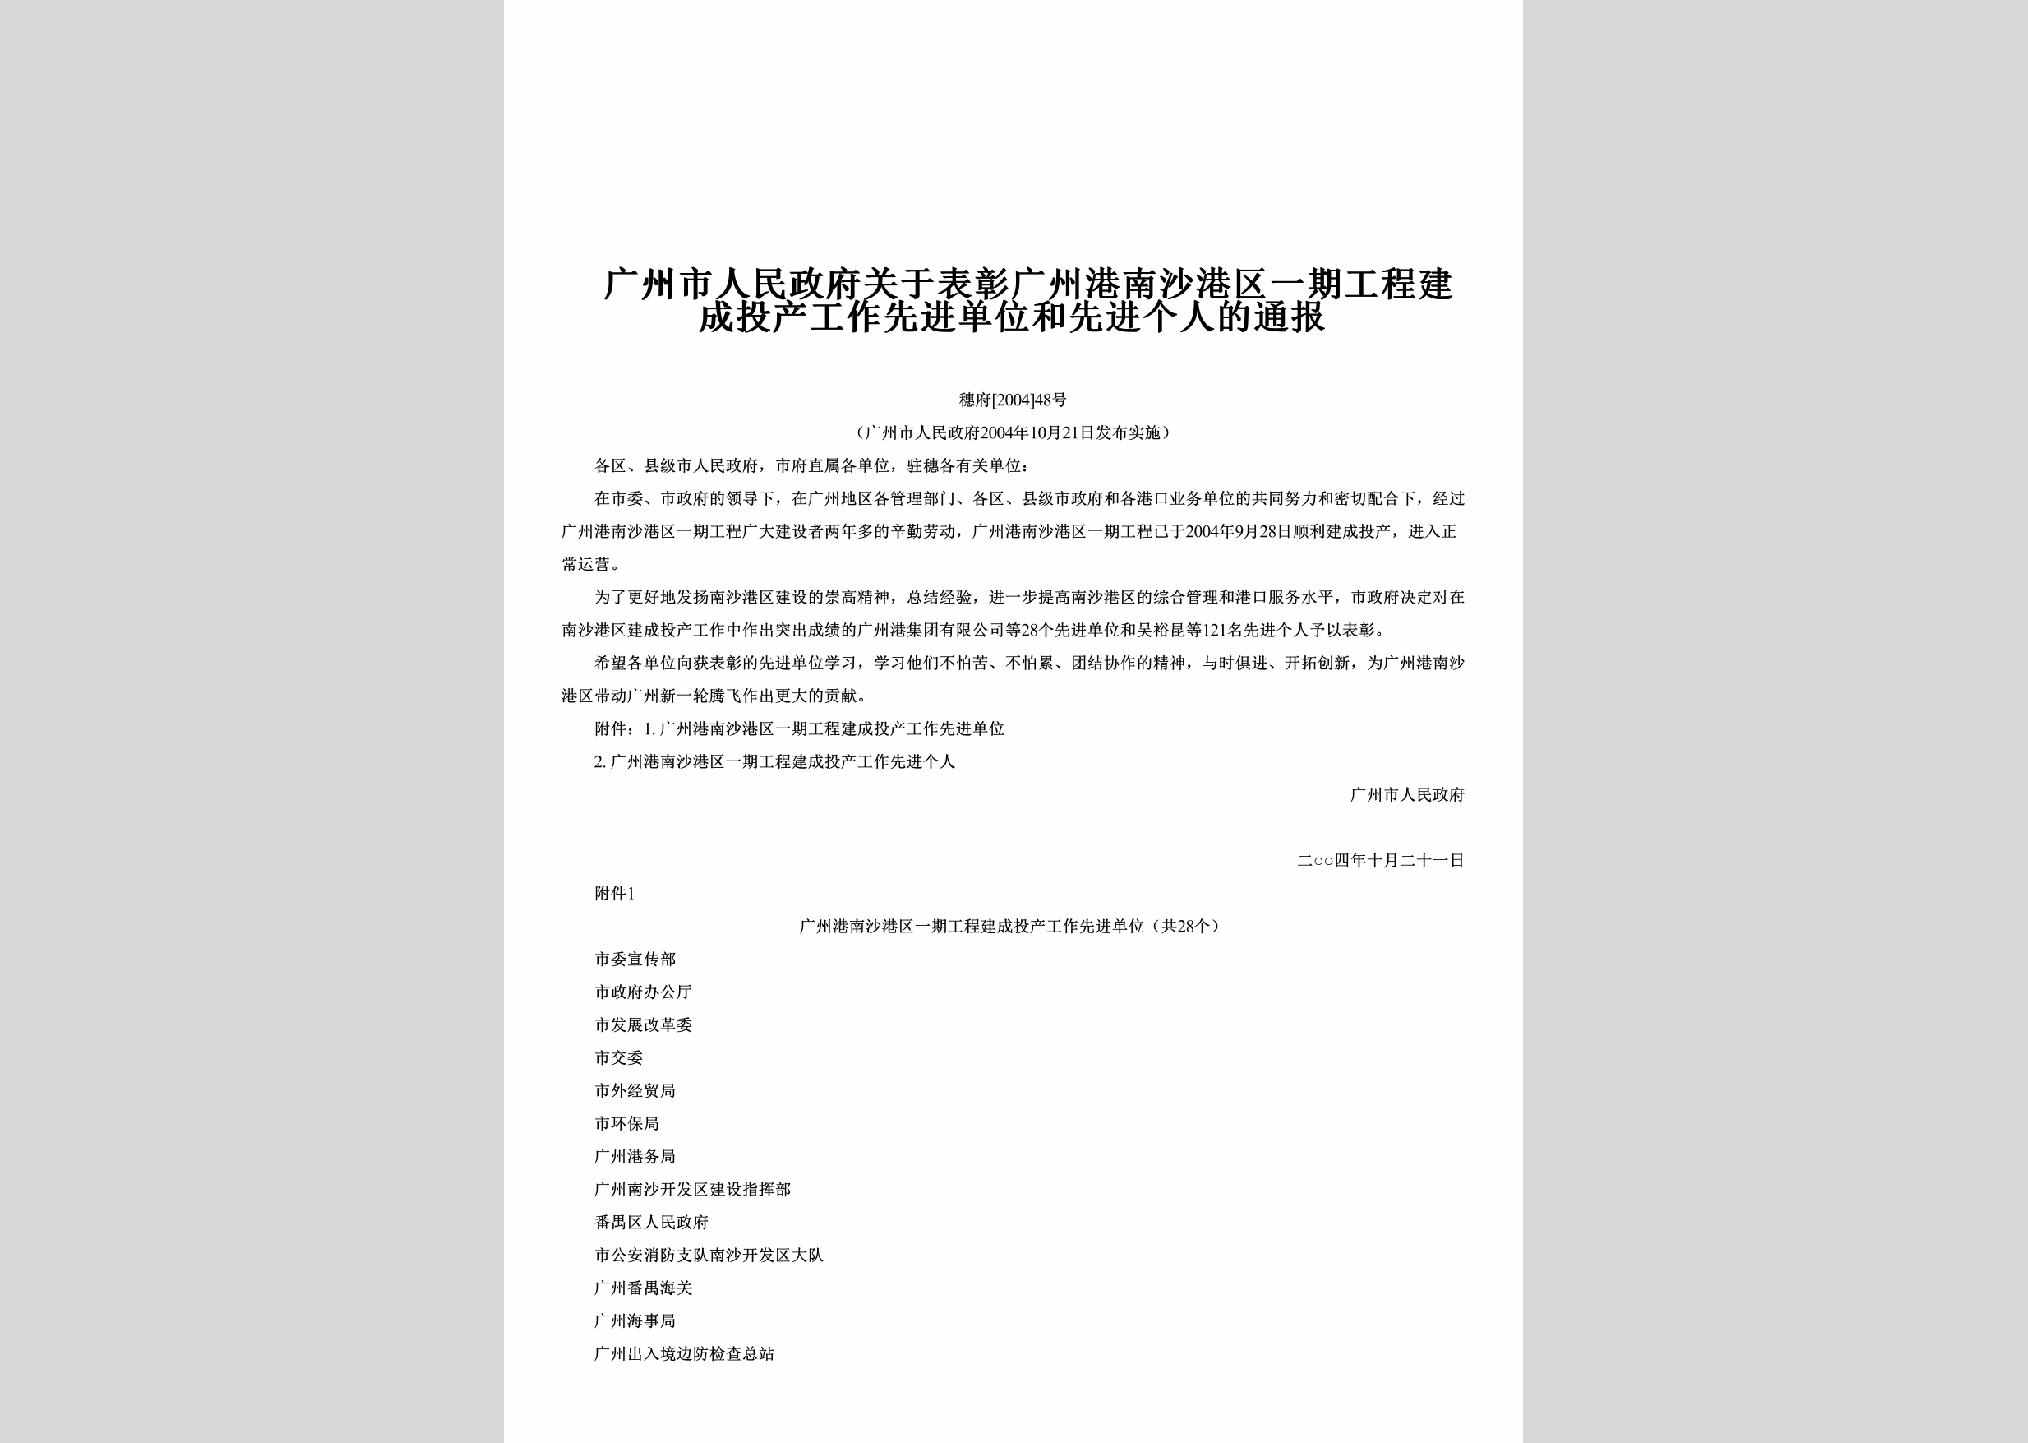 穗府[2004]48号：关于表彰广州港南沙港区一期工程建成投产工作先进单位和先进个人的通报